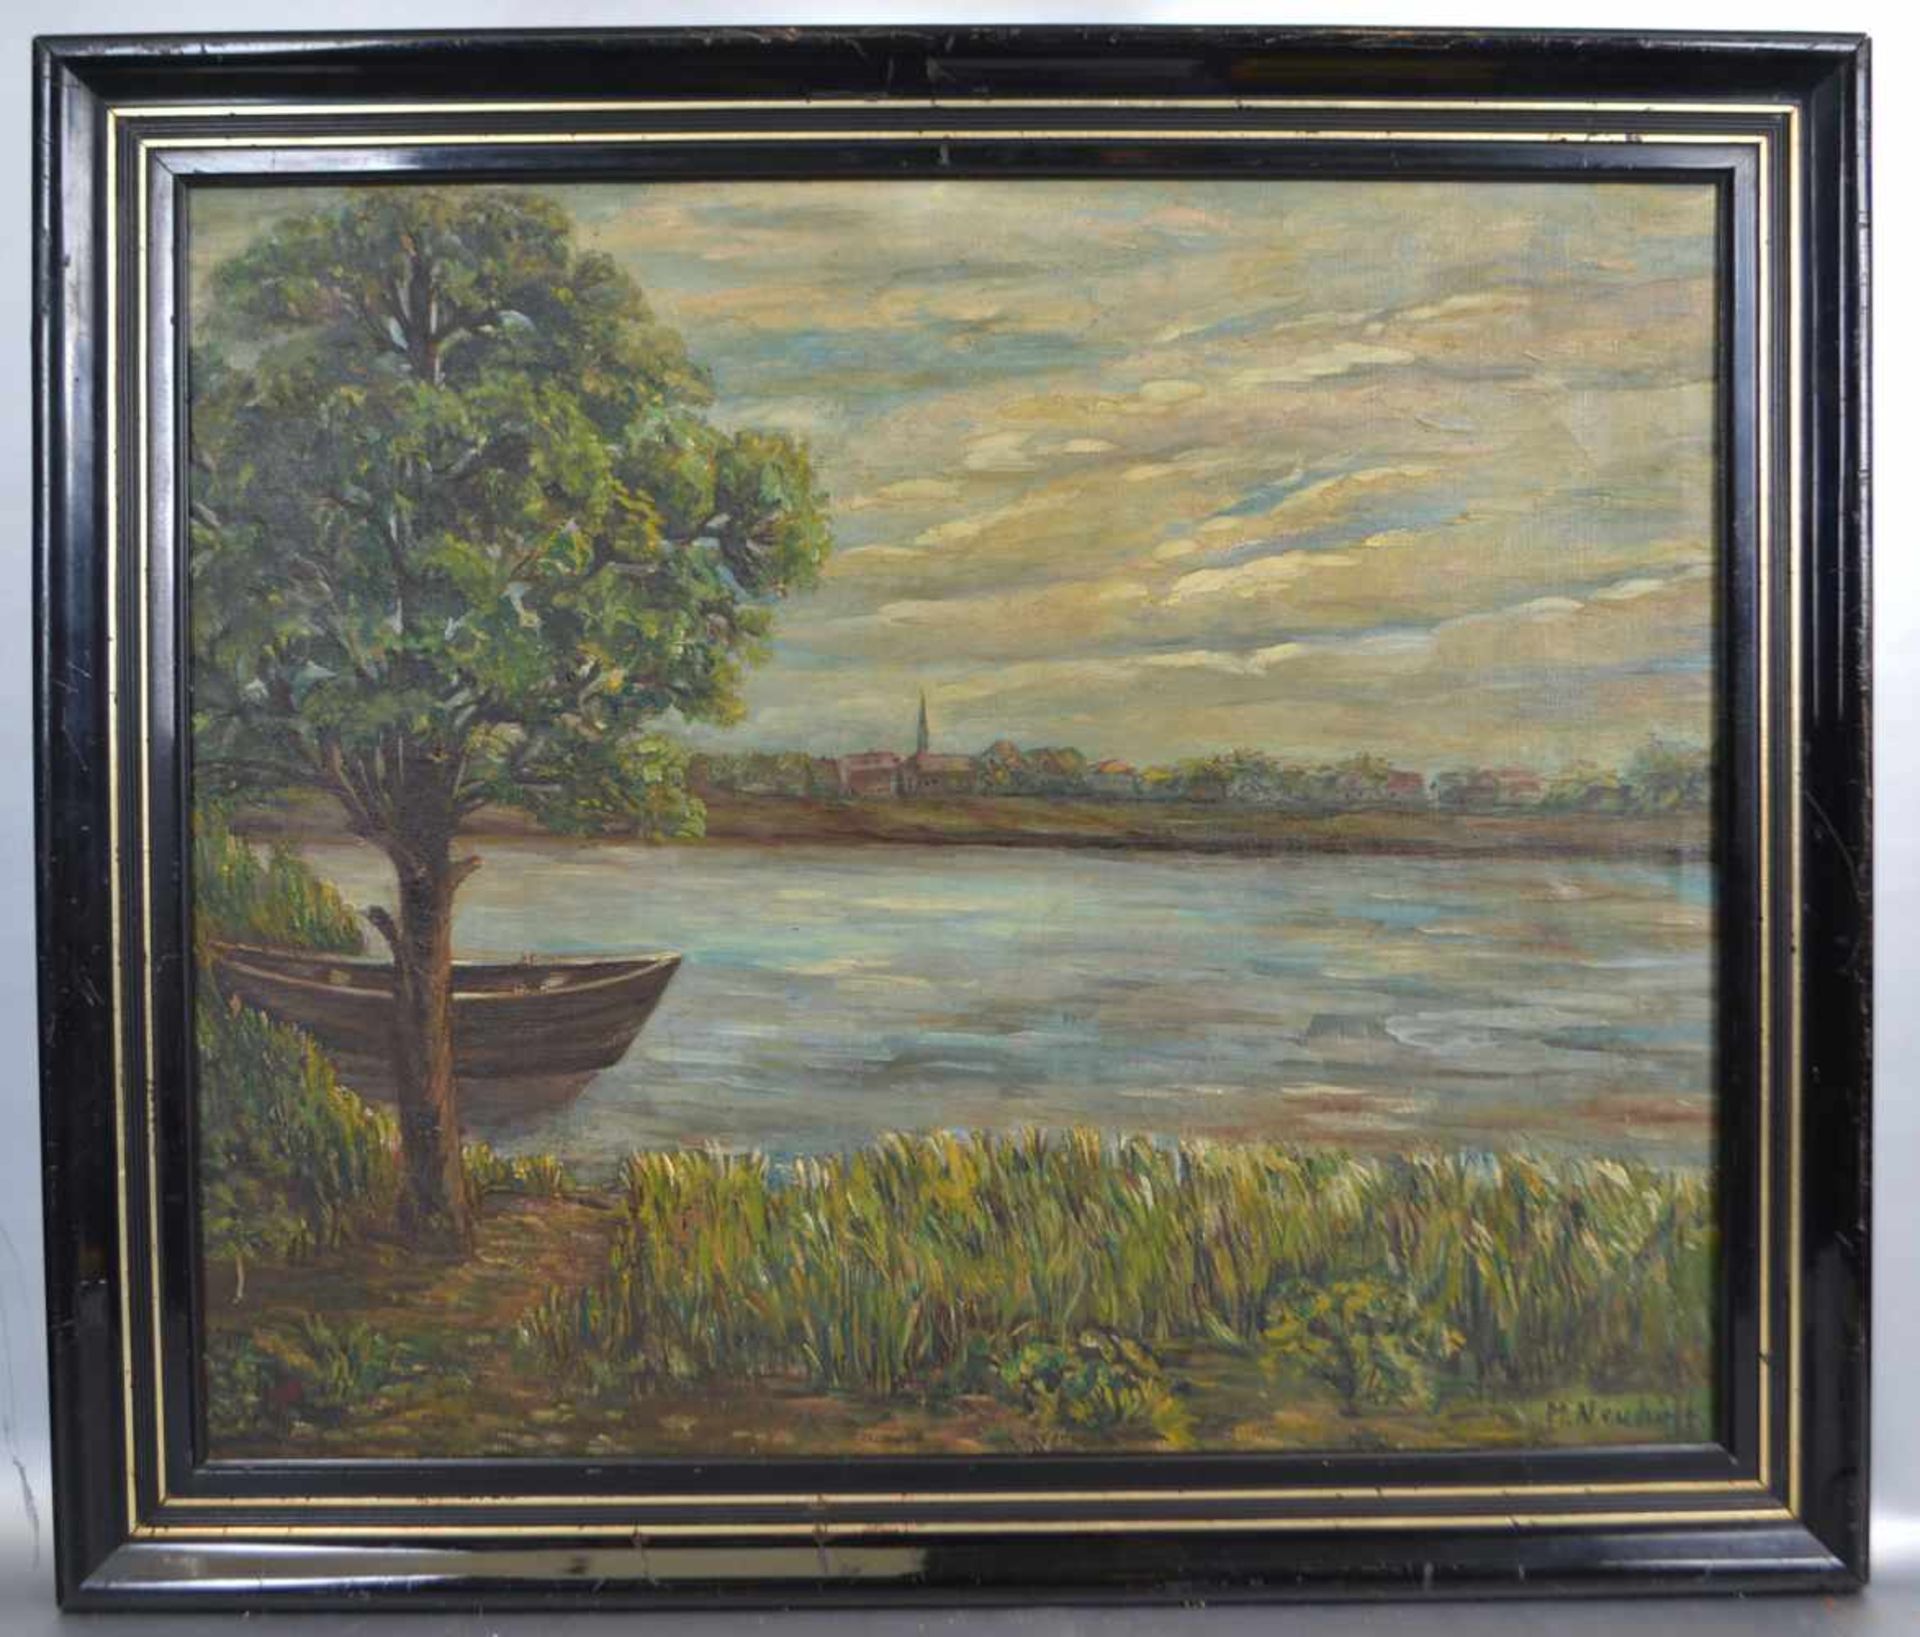 M. NeuhoffAnfang 20. Jh., Rheinlauf mit Kahn am Ufer, im Hintergrund Teilansicht eines Dorfes, Öl/